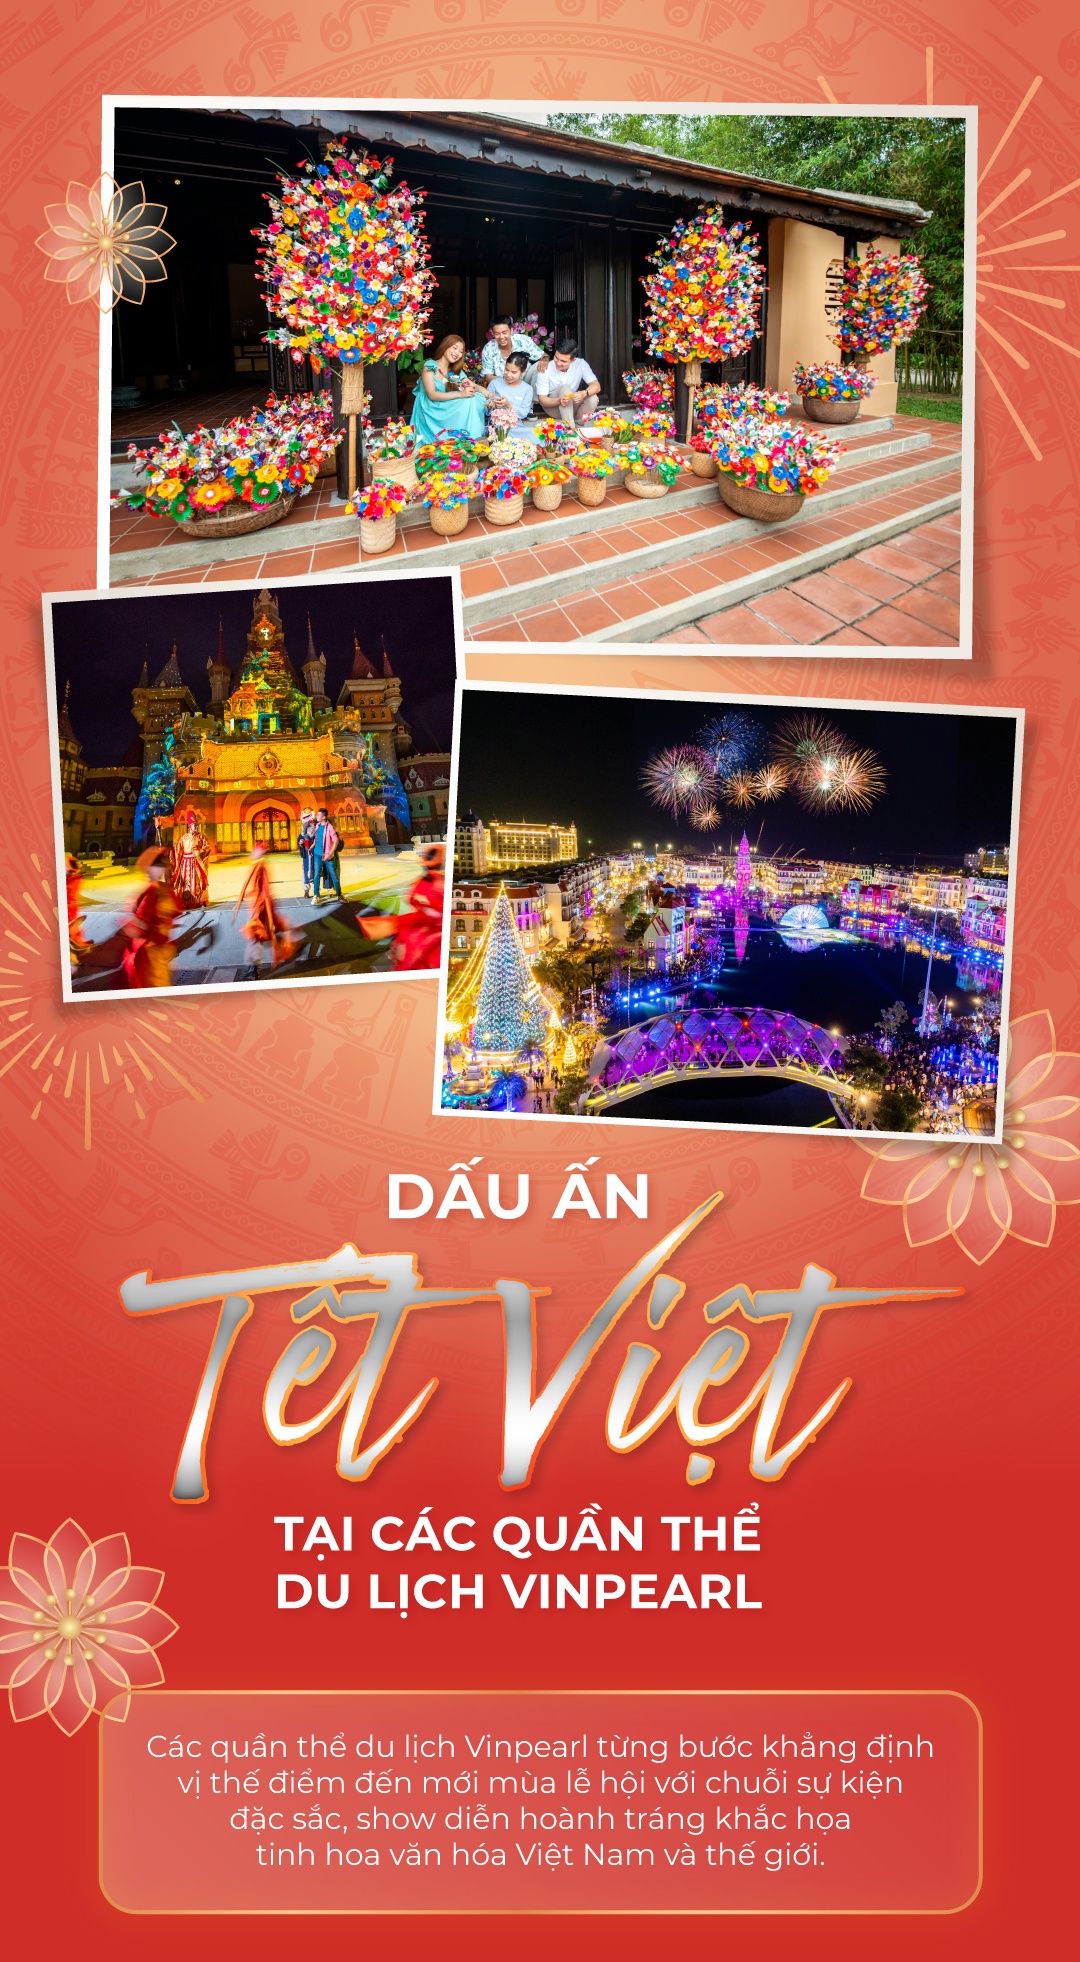 - cover_mobile - Dấu ấn Tết Việt tại các quần thể du lịch Vinpearl